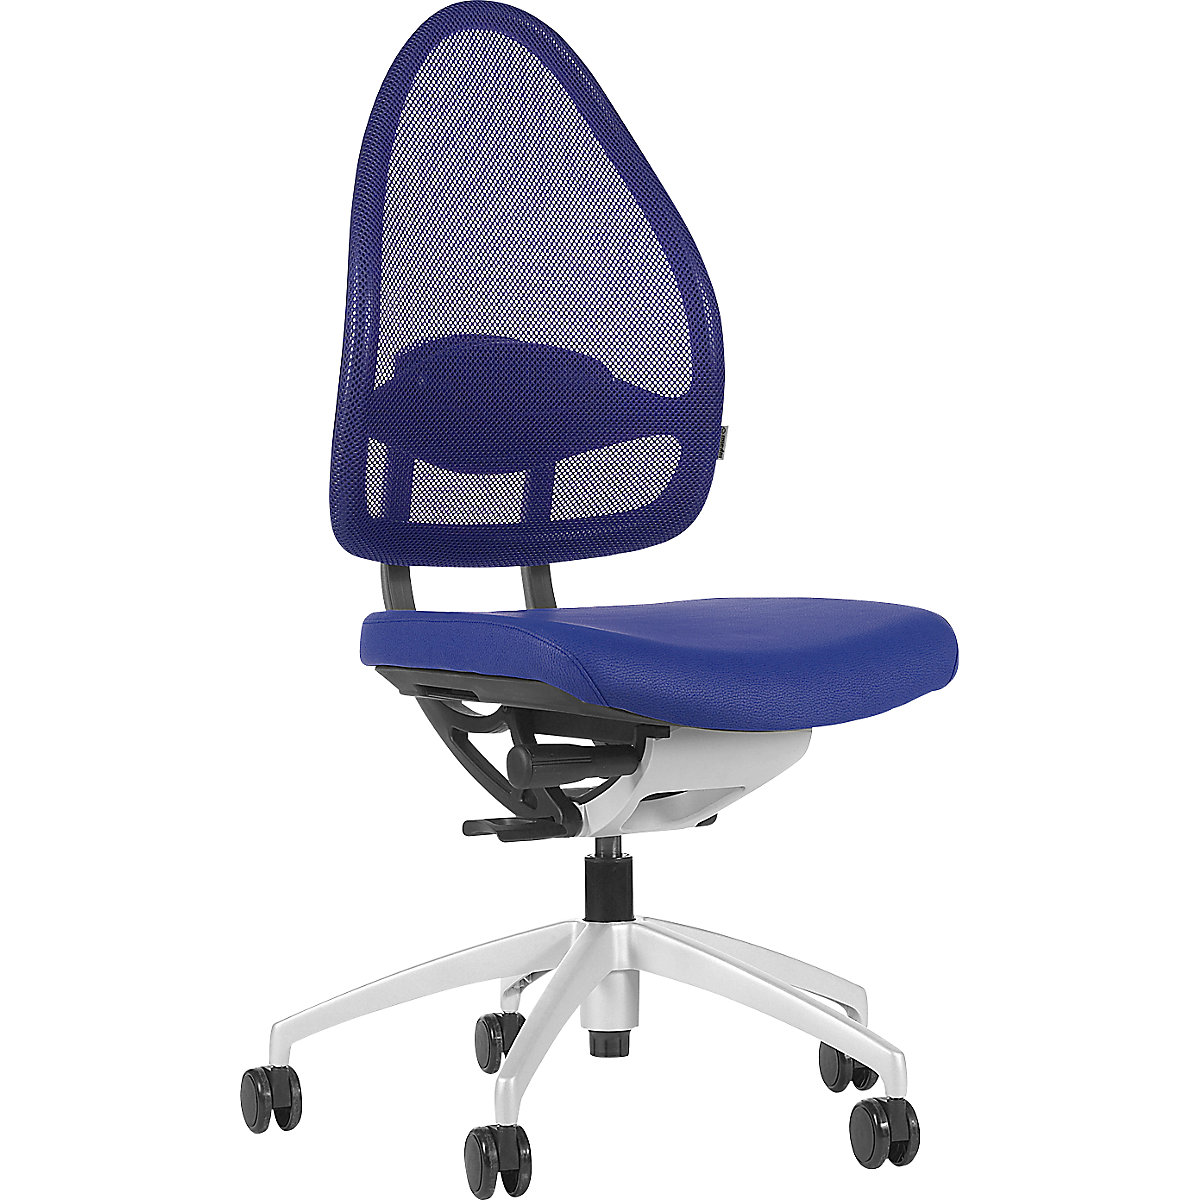 Uredski okretni stolac lijepog oblika, s mrežastim naslonom - Topstar